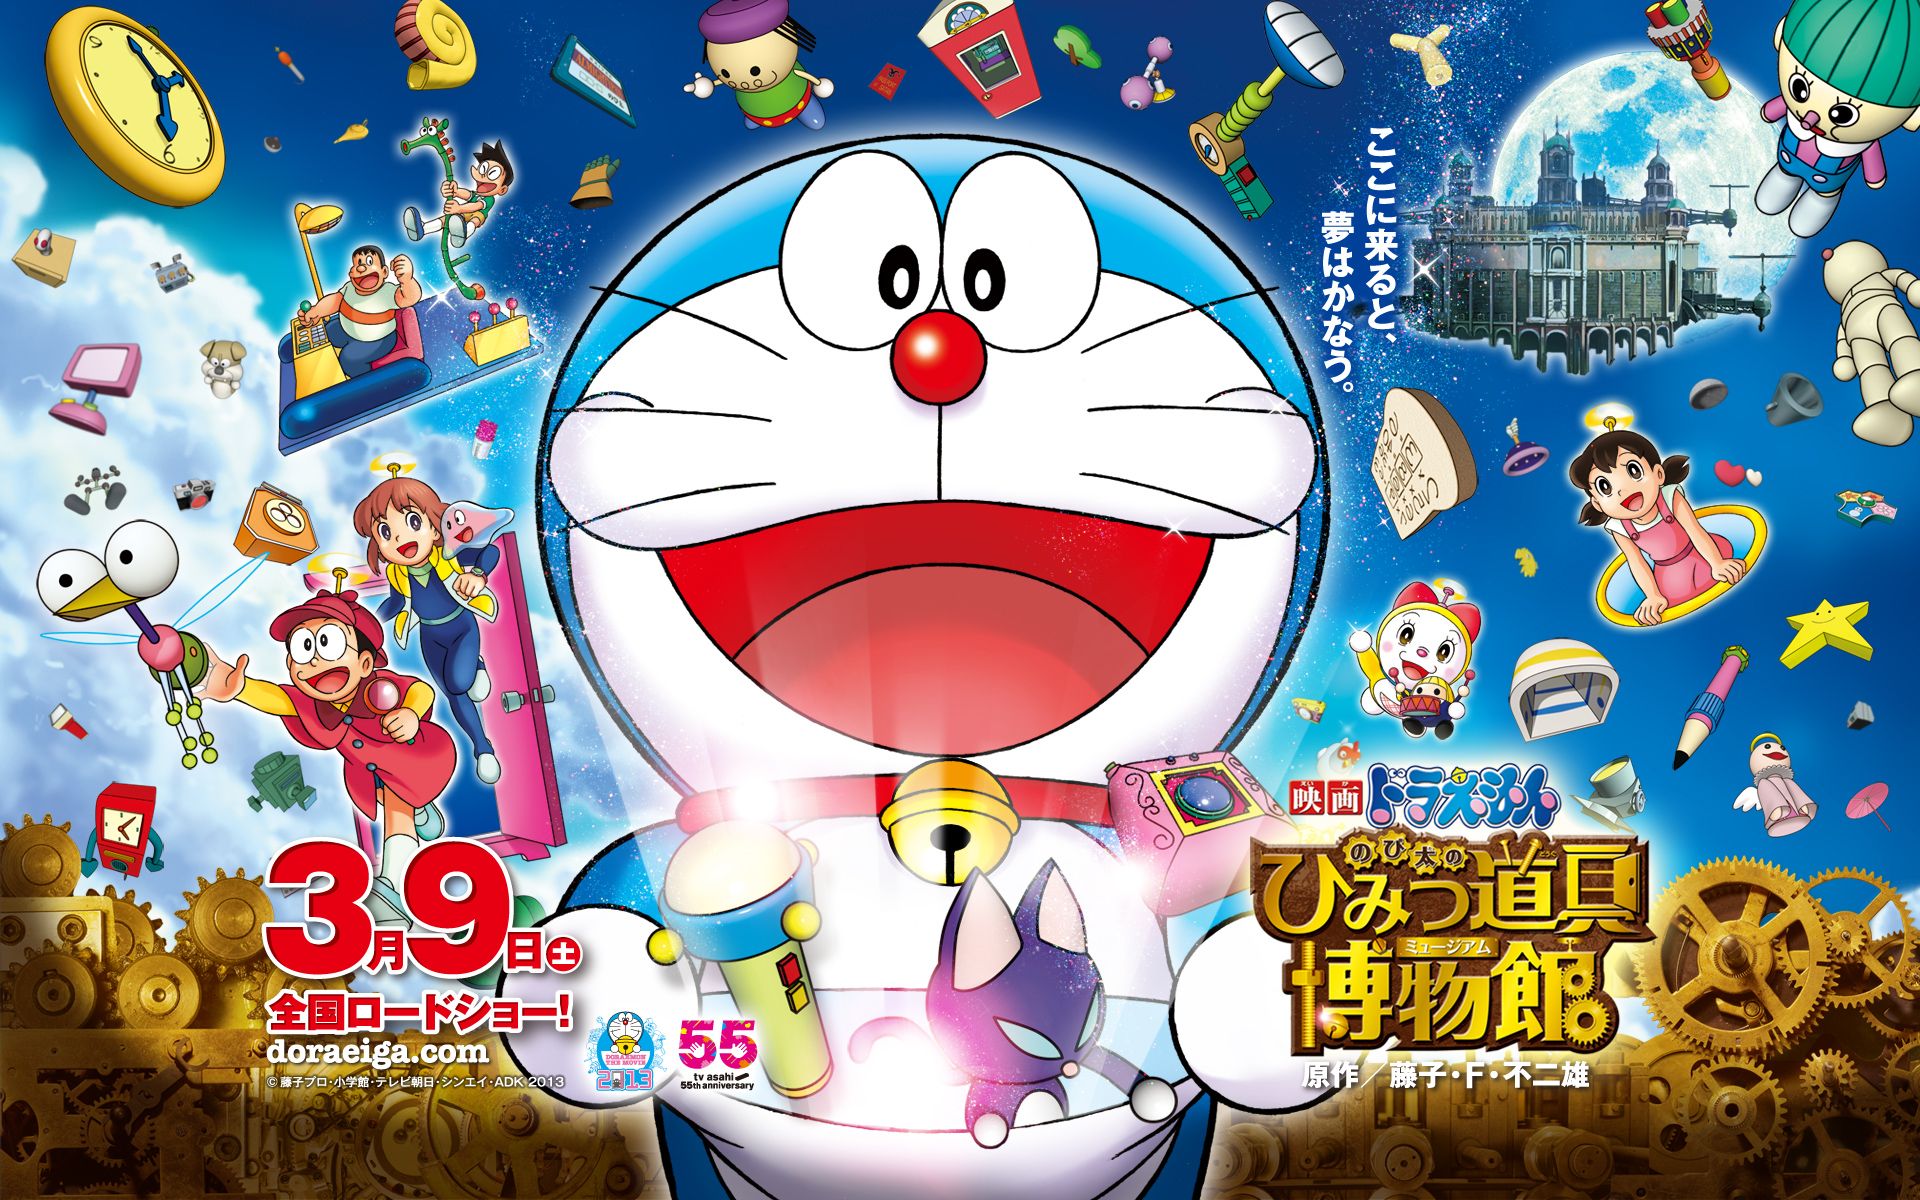 Hình nền Doraemon Secret Gadget Museum sẽ đưa bạn đến trải nghiệm kỳ diệu trong bảo tàng công nghệ bí mật của Doreamon. Những gadget độc đáo và phi thường sẽ được hiển thị trên nền tảng màu đỏ tươi sáng, như đang chờ bạn khám phá. Là fan của Doraemon, bạn không nên bỏ qua bức hình này, nó sẽ khiến bạn nhớ mãi những khoảnh khắc đáng nhớ trong câu chuyện này.